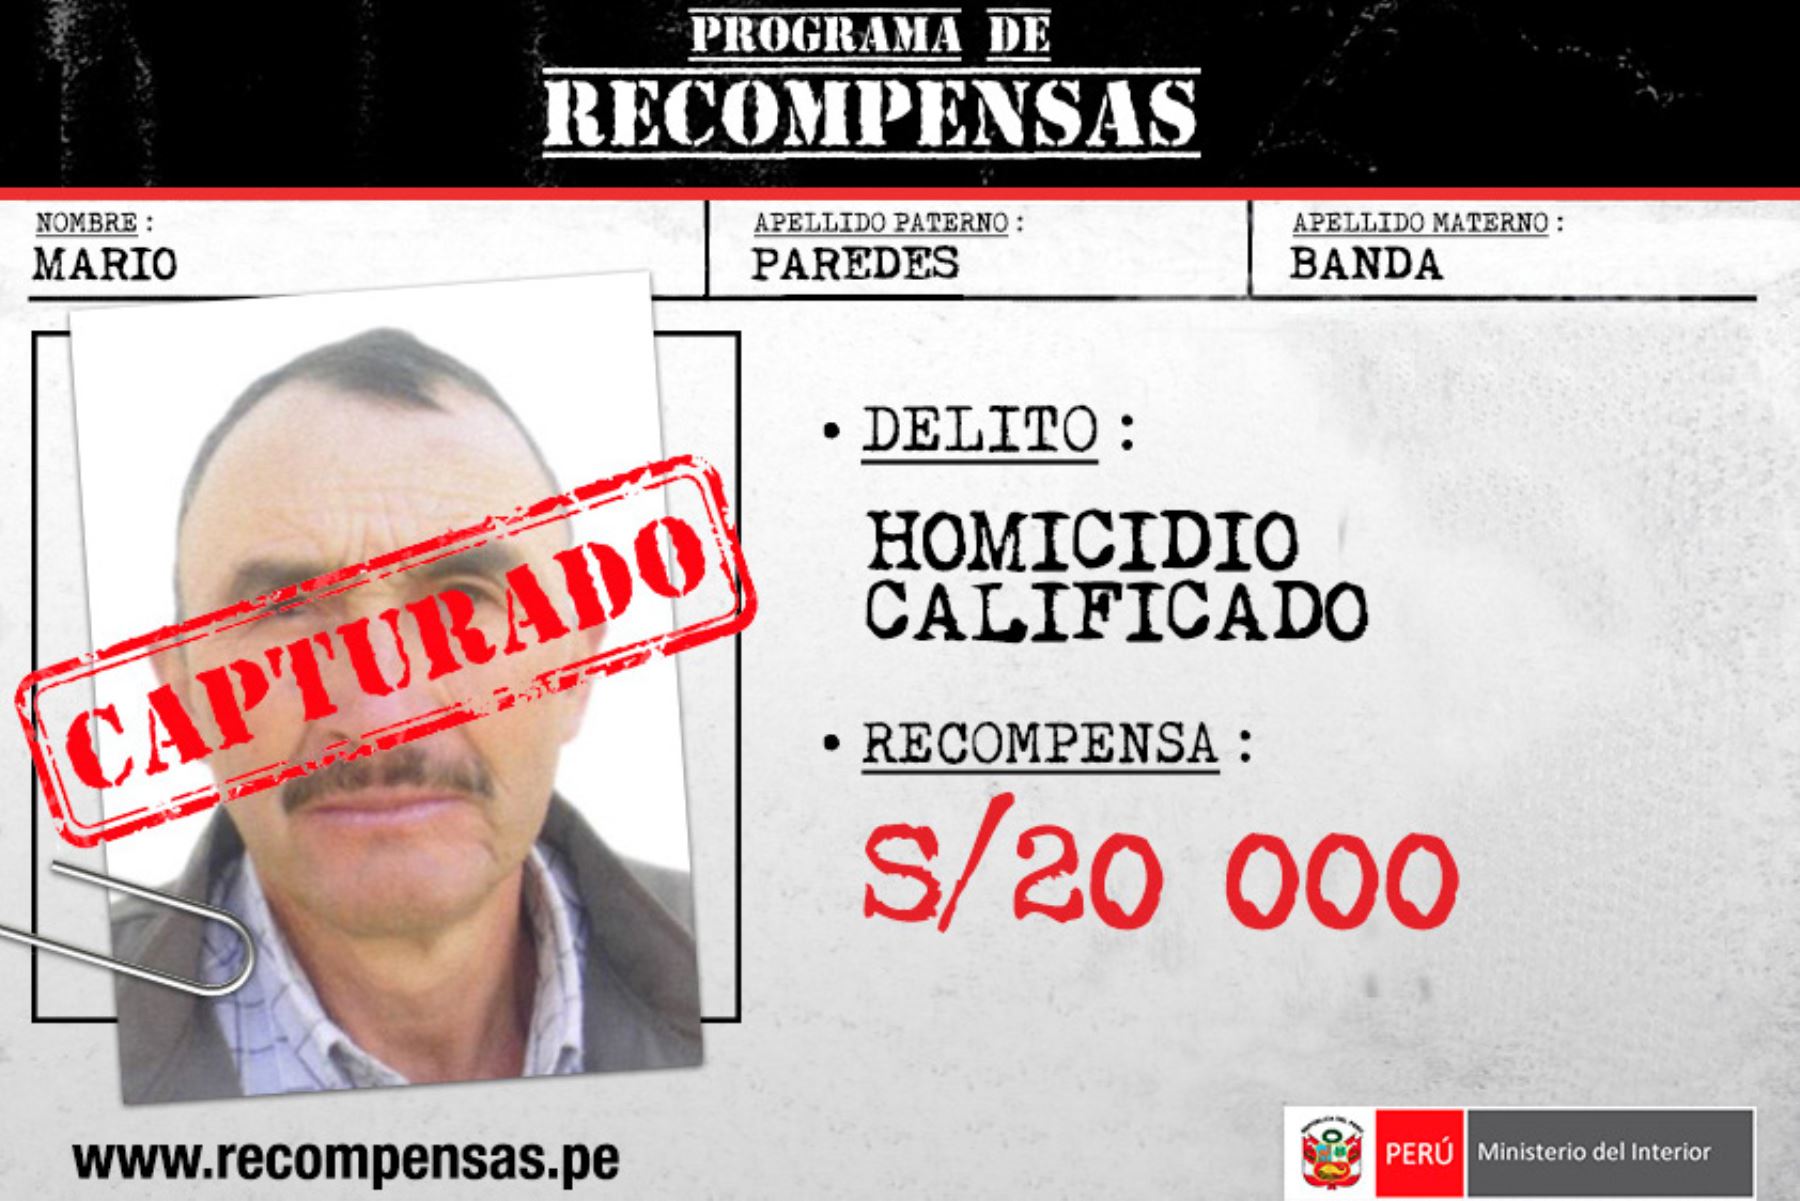 Policías de la comisaría de Chota, Región Policial Cajamarca, capturaron a Mario Paredes Banda (61), sujeto incluido en el Programa de Recompensas “Que Ellos se Cuiden”, del Ministerio del Interior (Mininter), al estar requisitoriado por el delito de homicidio calificado.